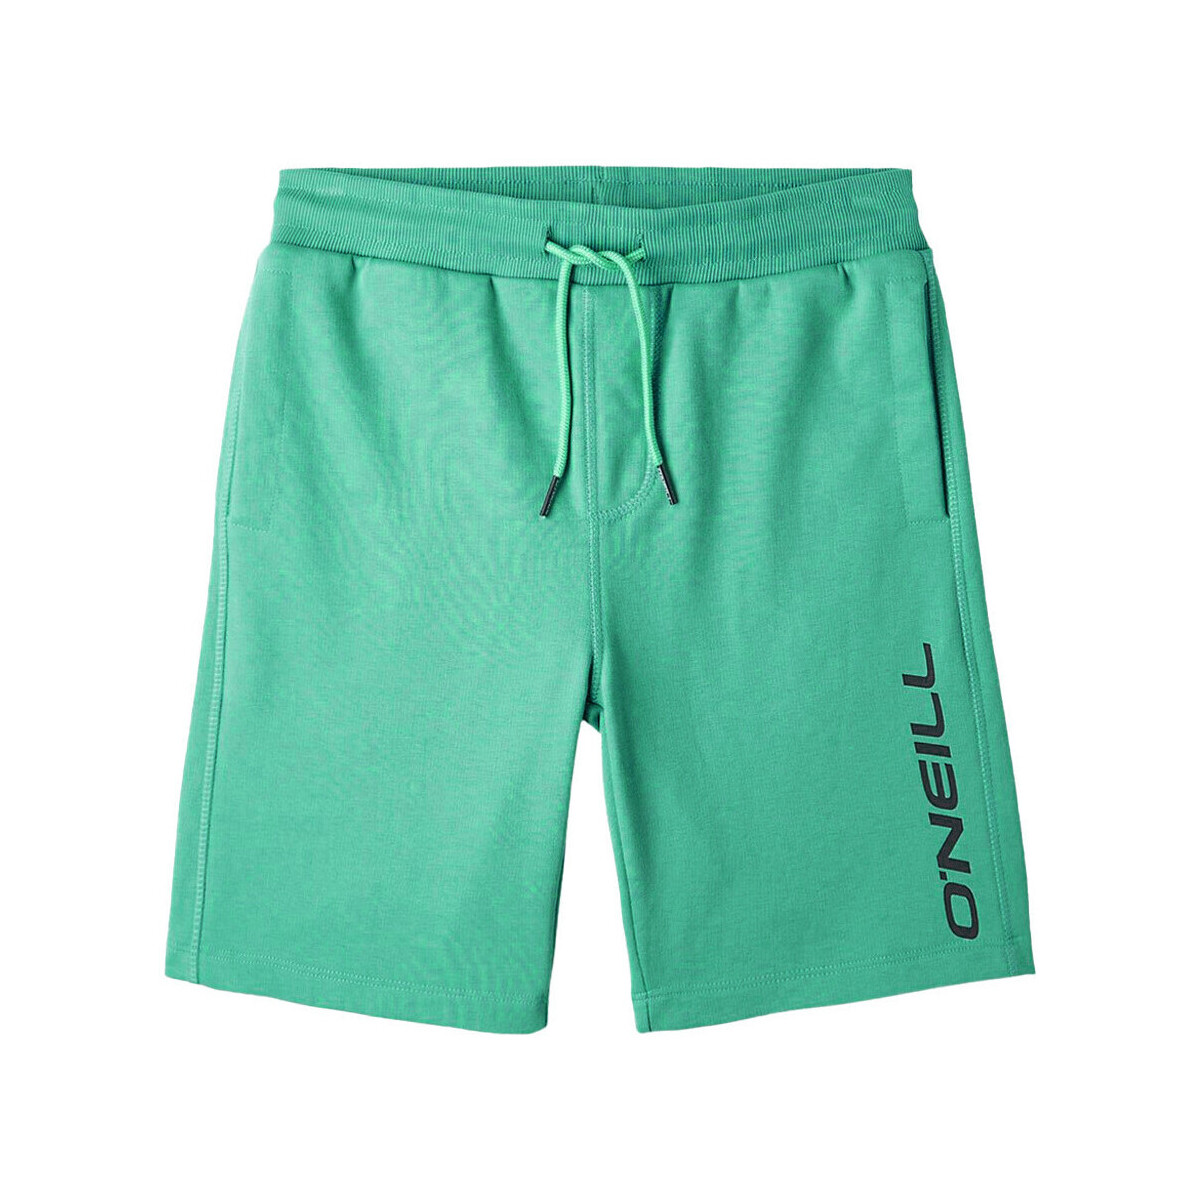 textil Niño Shorts / Bermudas O'neill  Verde